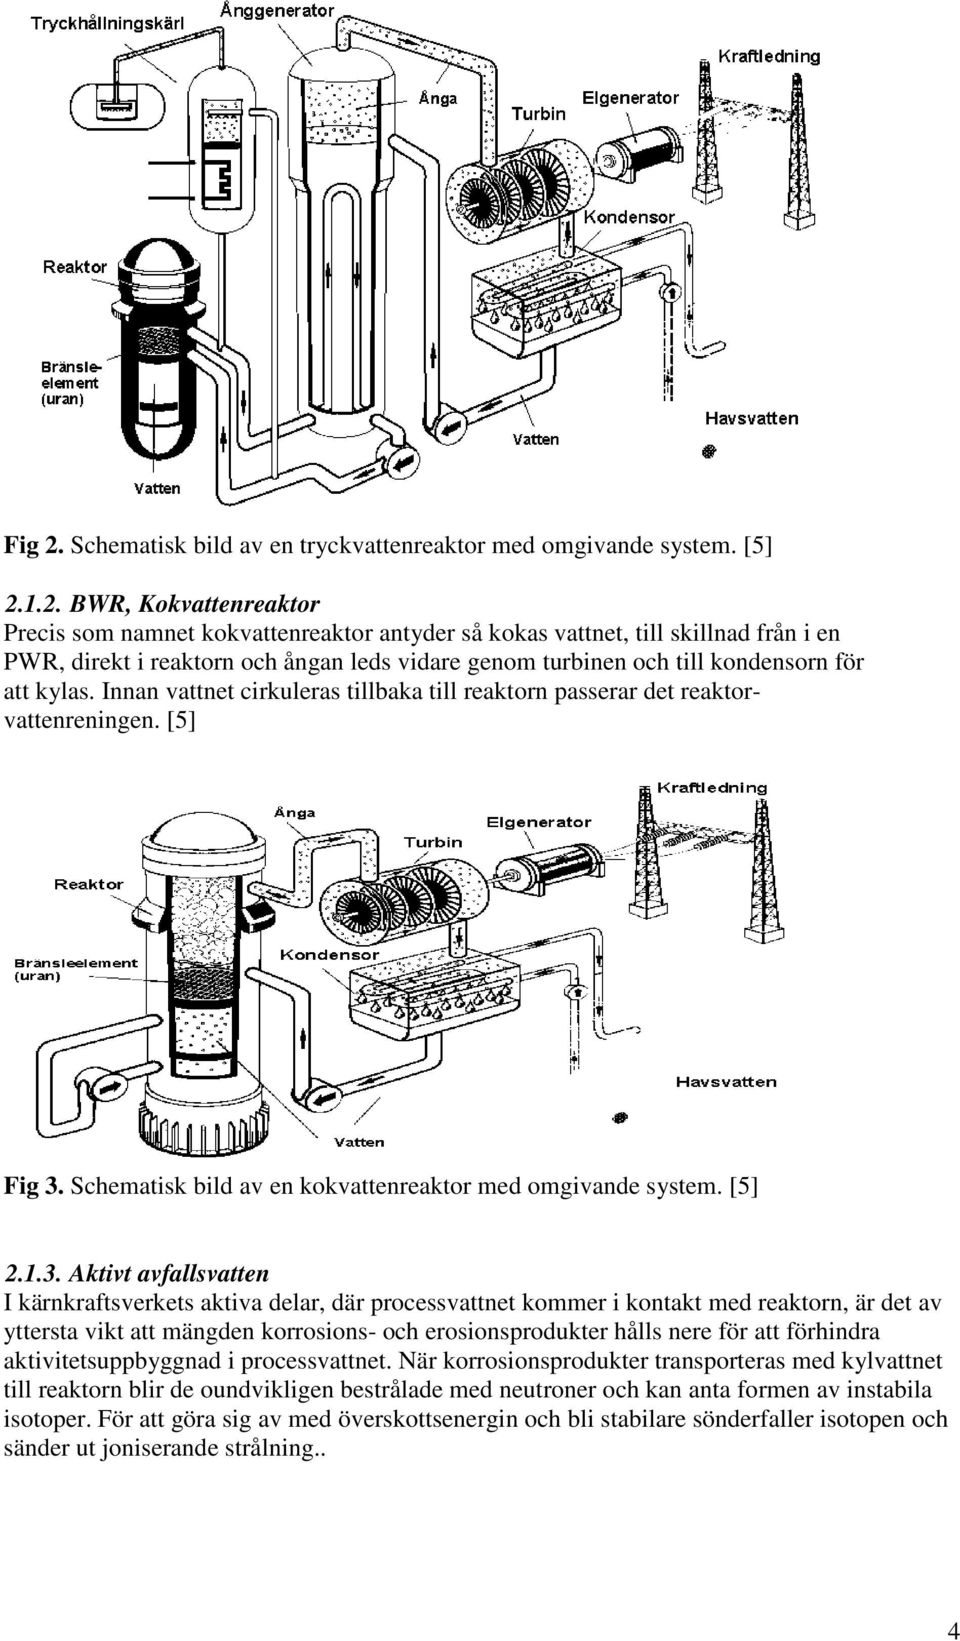 1.2. BWR, Kokvattenreaktor Precis som namnet kokvattenreaktor antyder så kokas vattnet, till skillnad från i en PWR, direkt i reaktorn och ångan leds vidare genom turbinen och till kondensorn för att